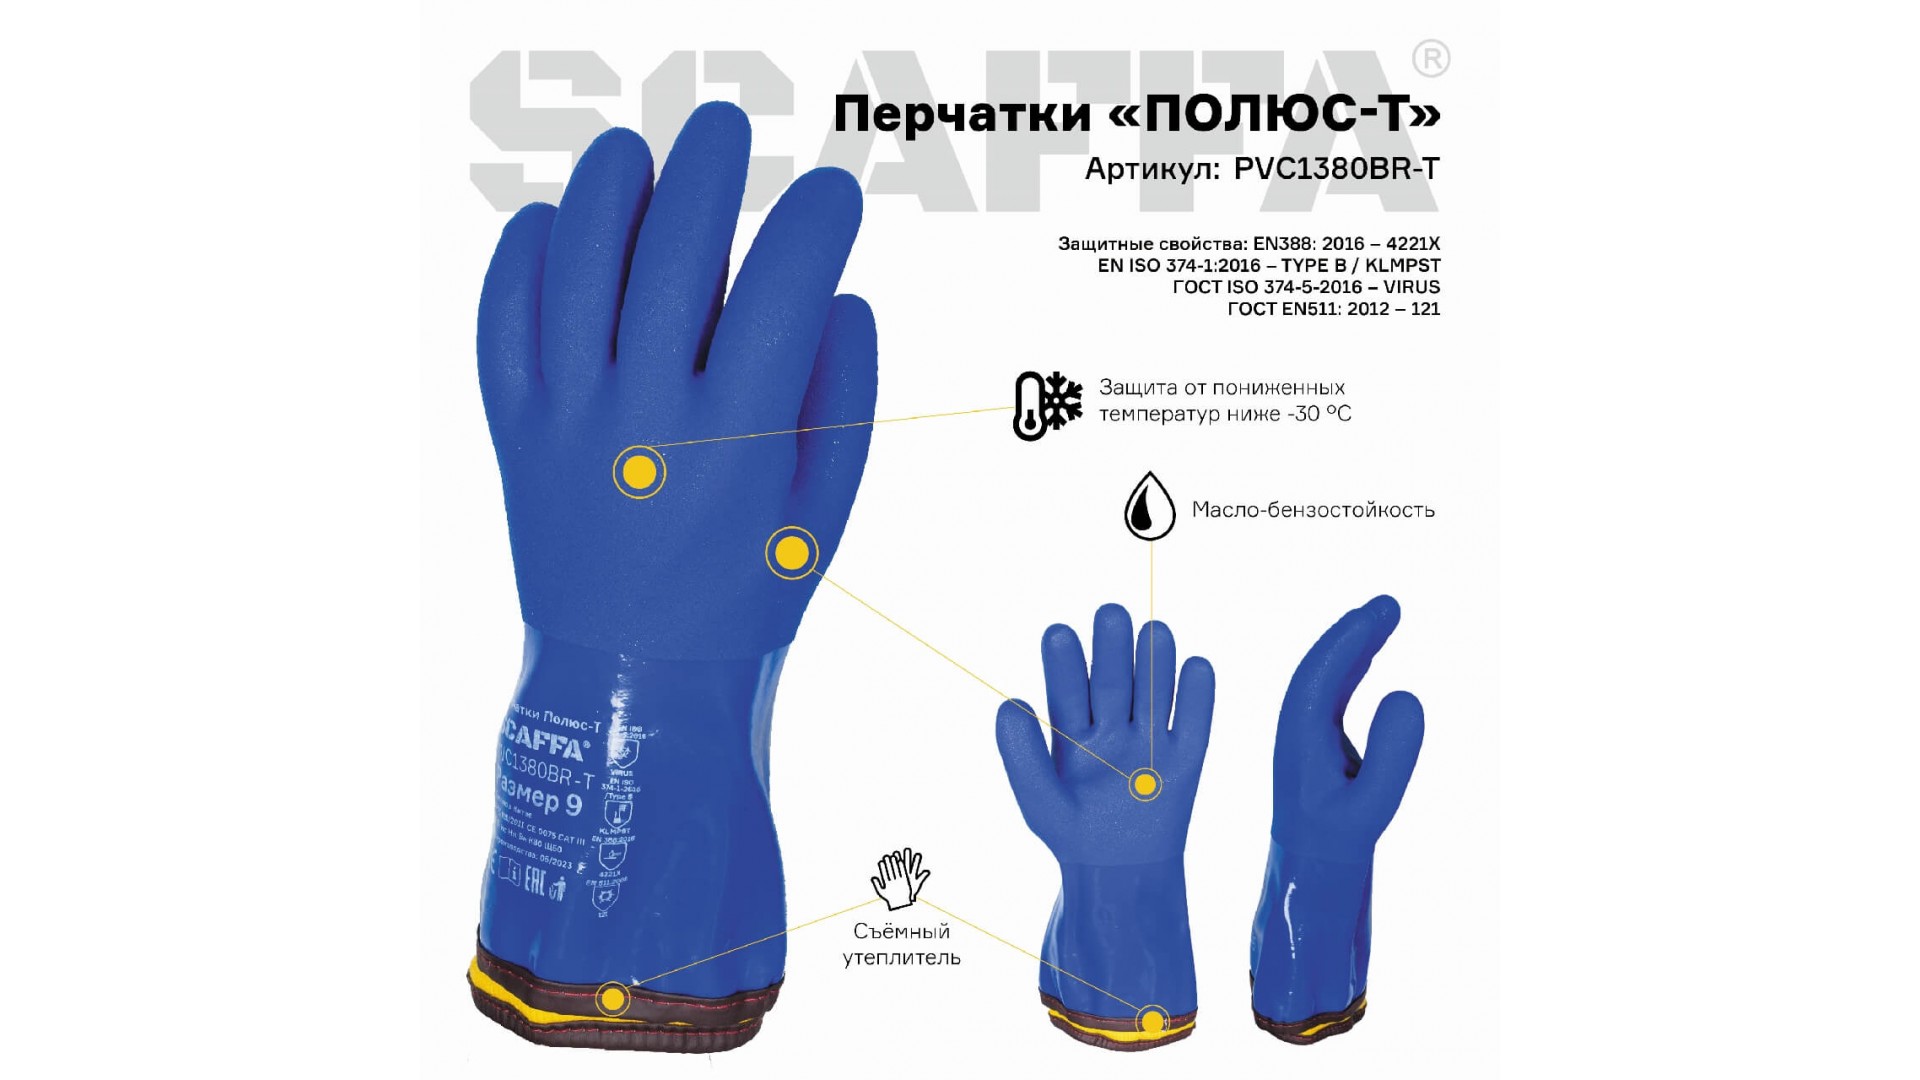 Перчатки ПОЛЮС-T для защиты от пониженных температур